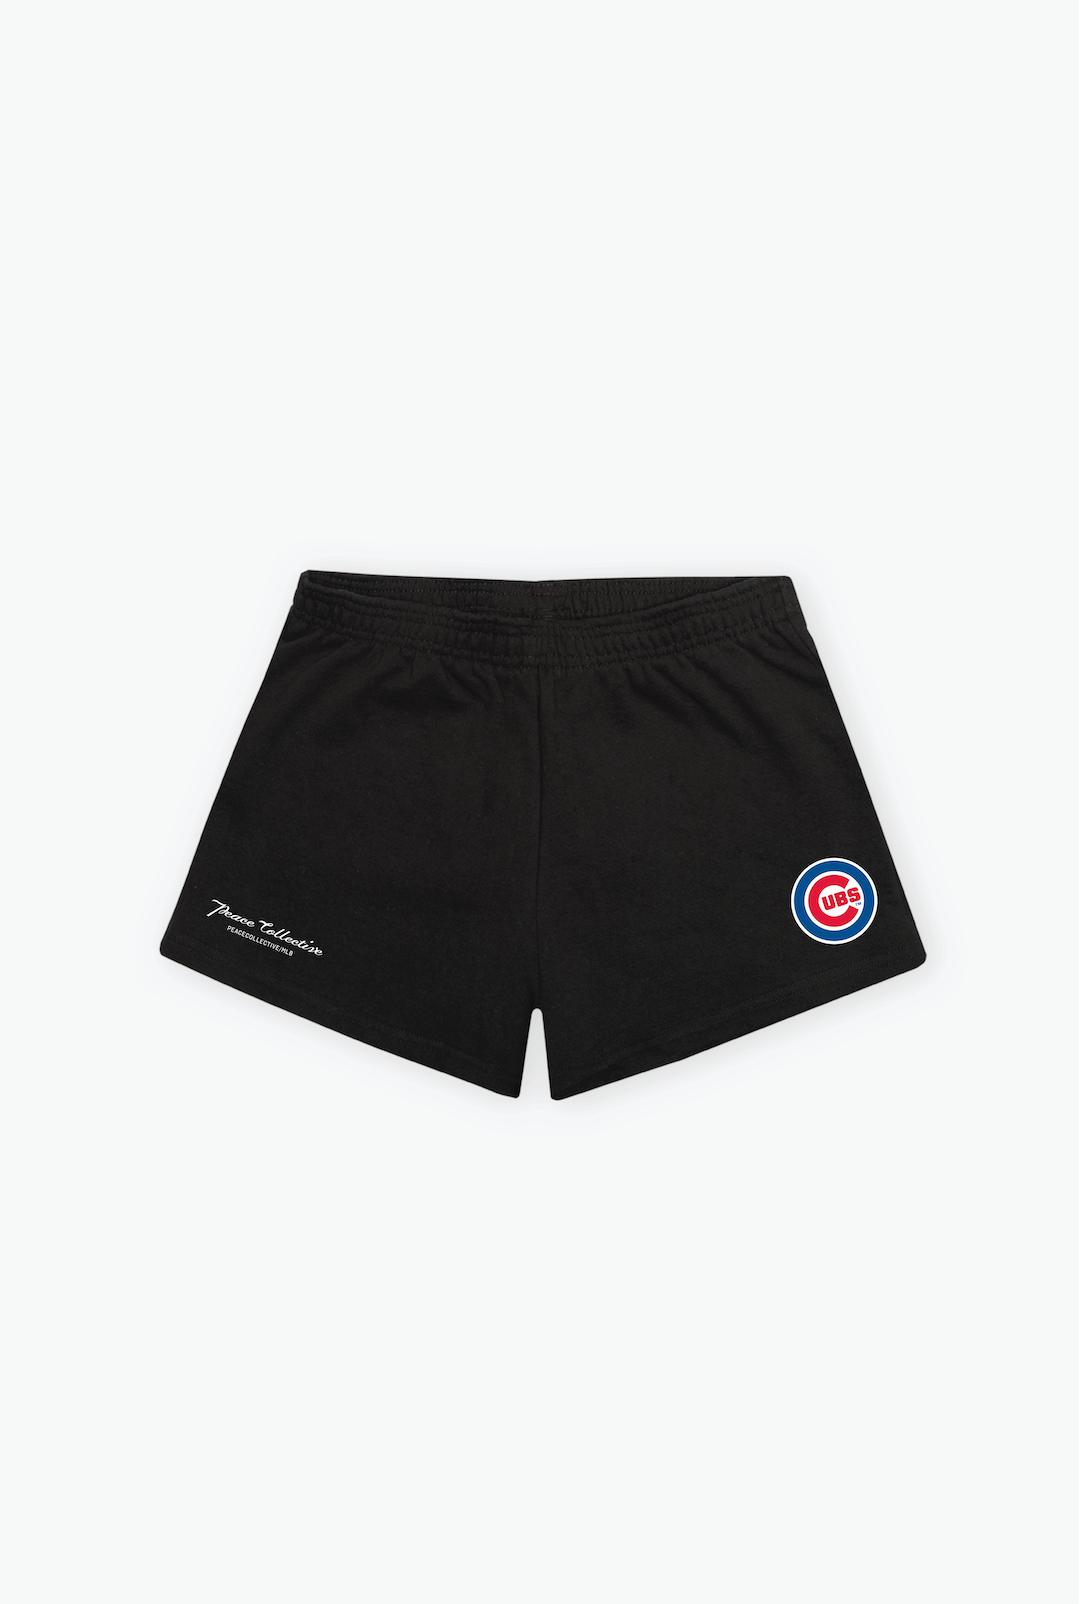 Chicago Cubs Logo Women's Fleece Shorts - Black